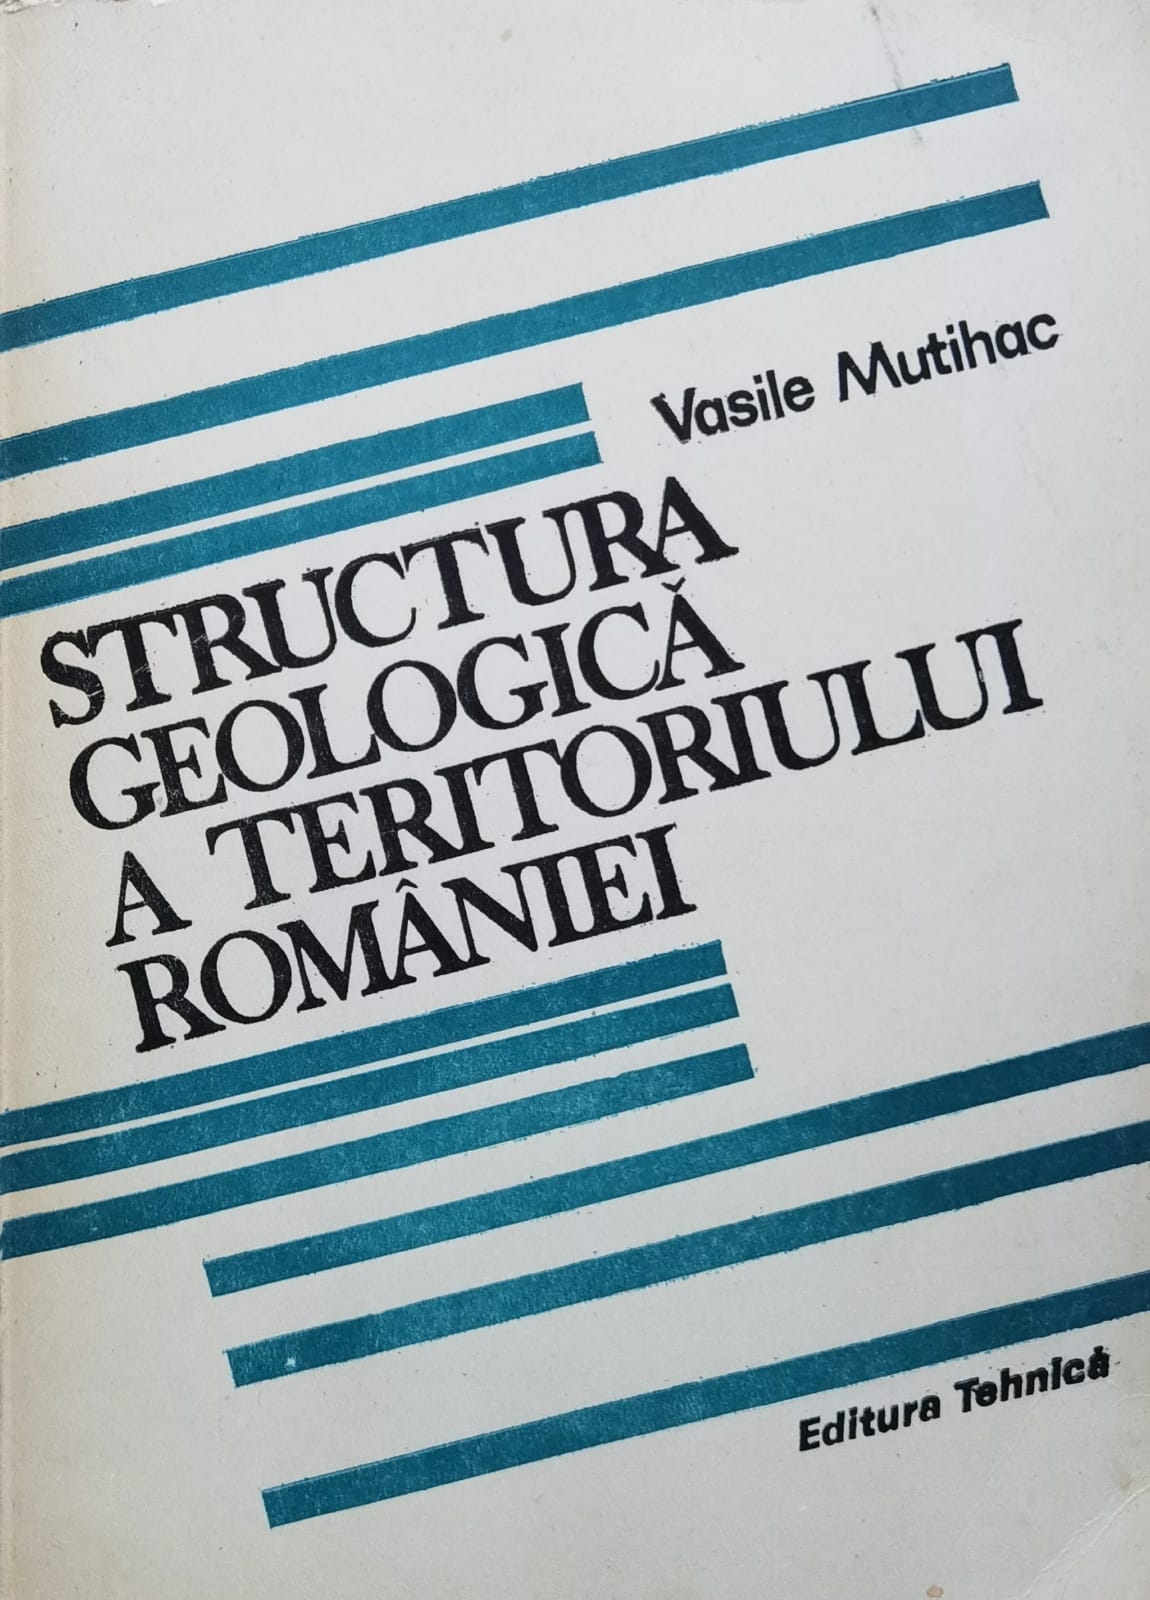 structura geologica a teritoriului romaniei                                                          vasile mutihac                                                                                      